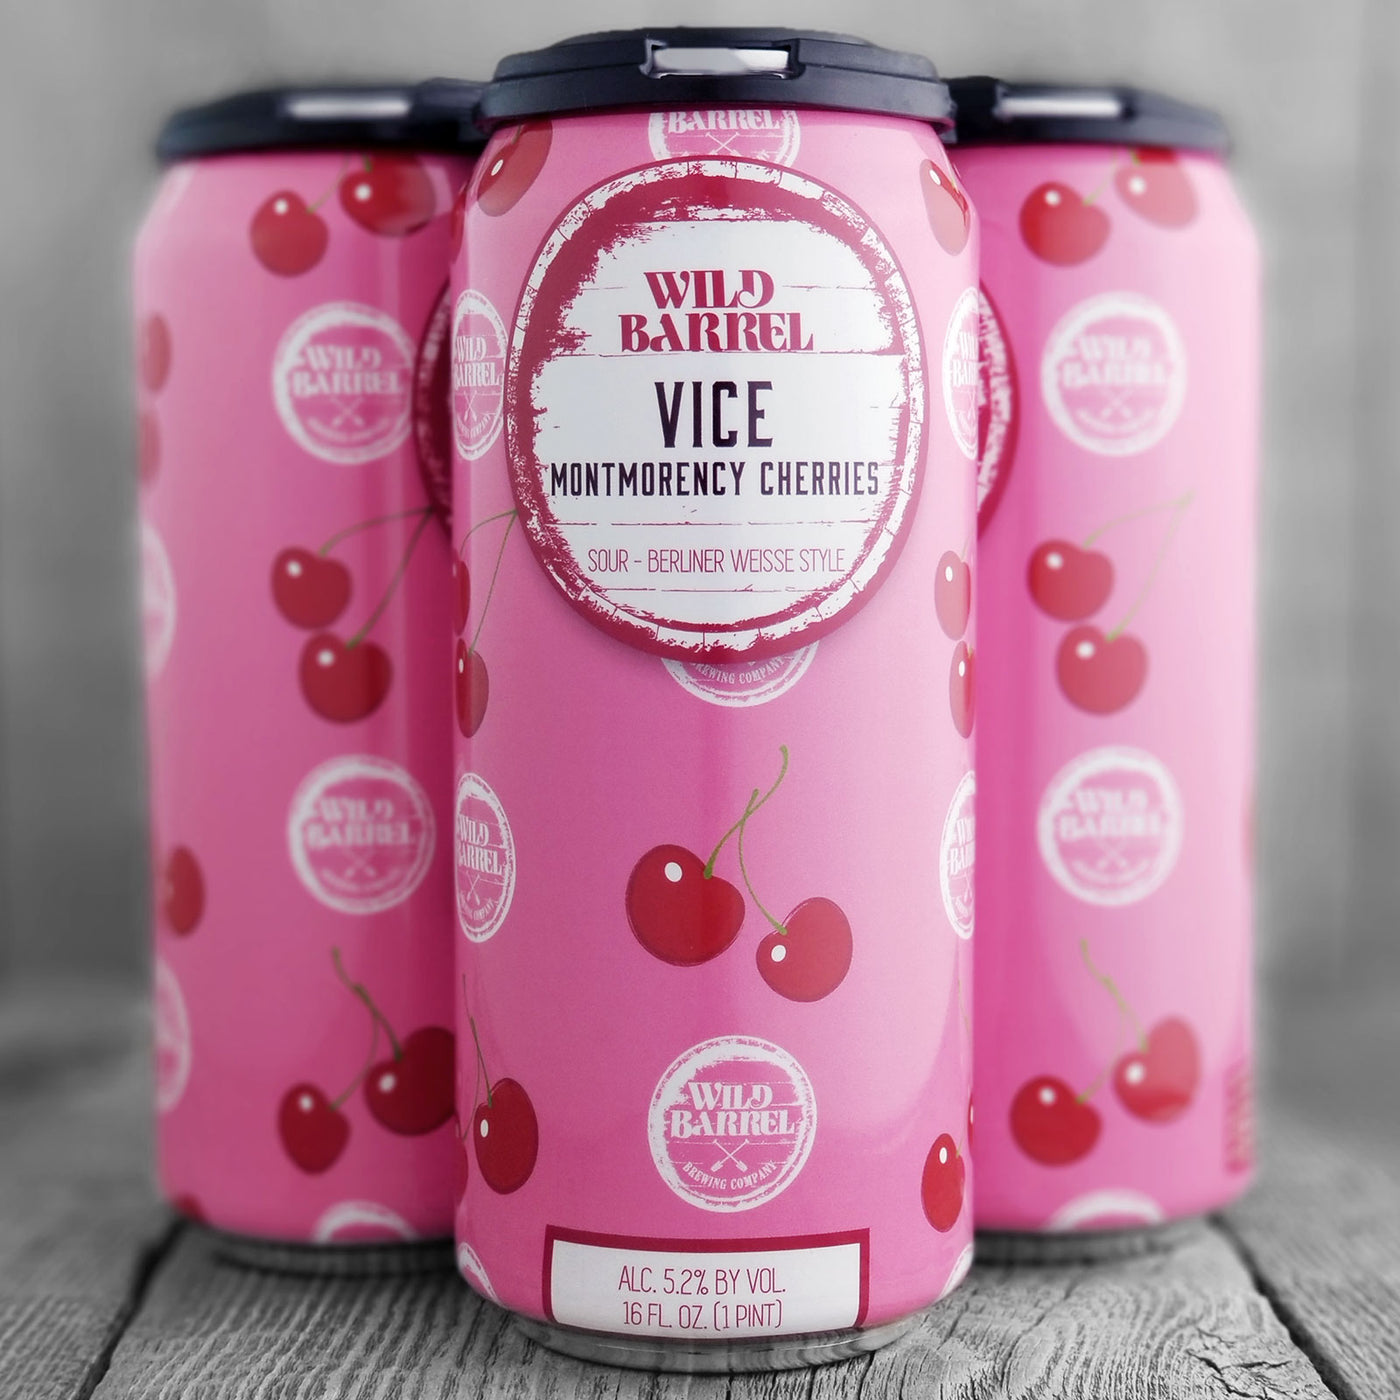 Wild Barrel Vice Montmorency Cherries